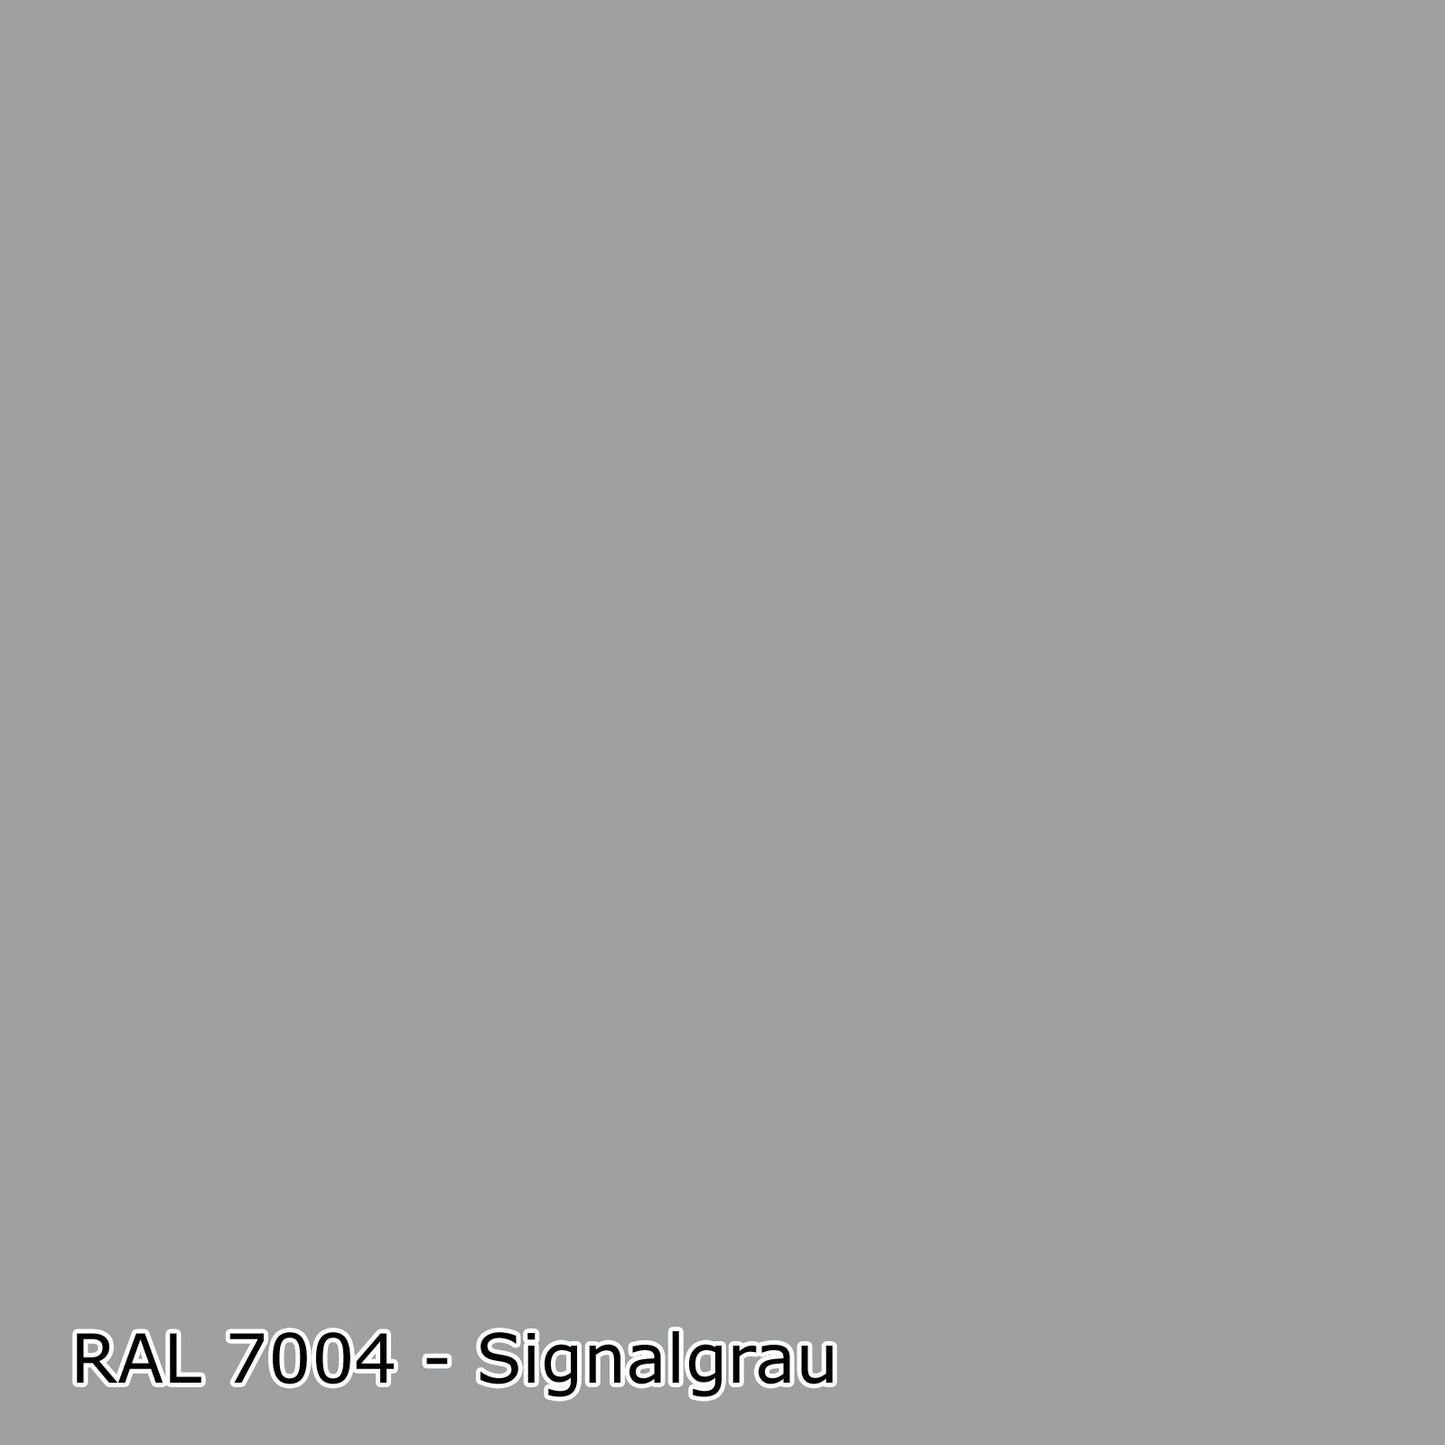 2,5 L Latexfarbe, RAL Farbwahl - MATT (RAL 6008 - 9018)